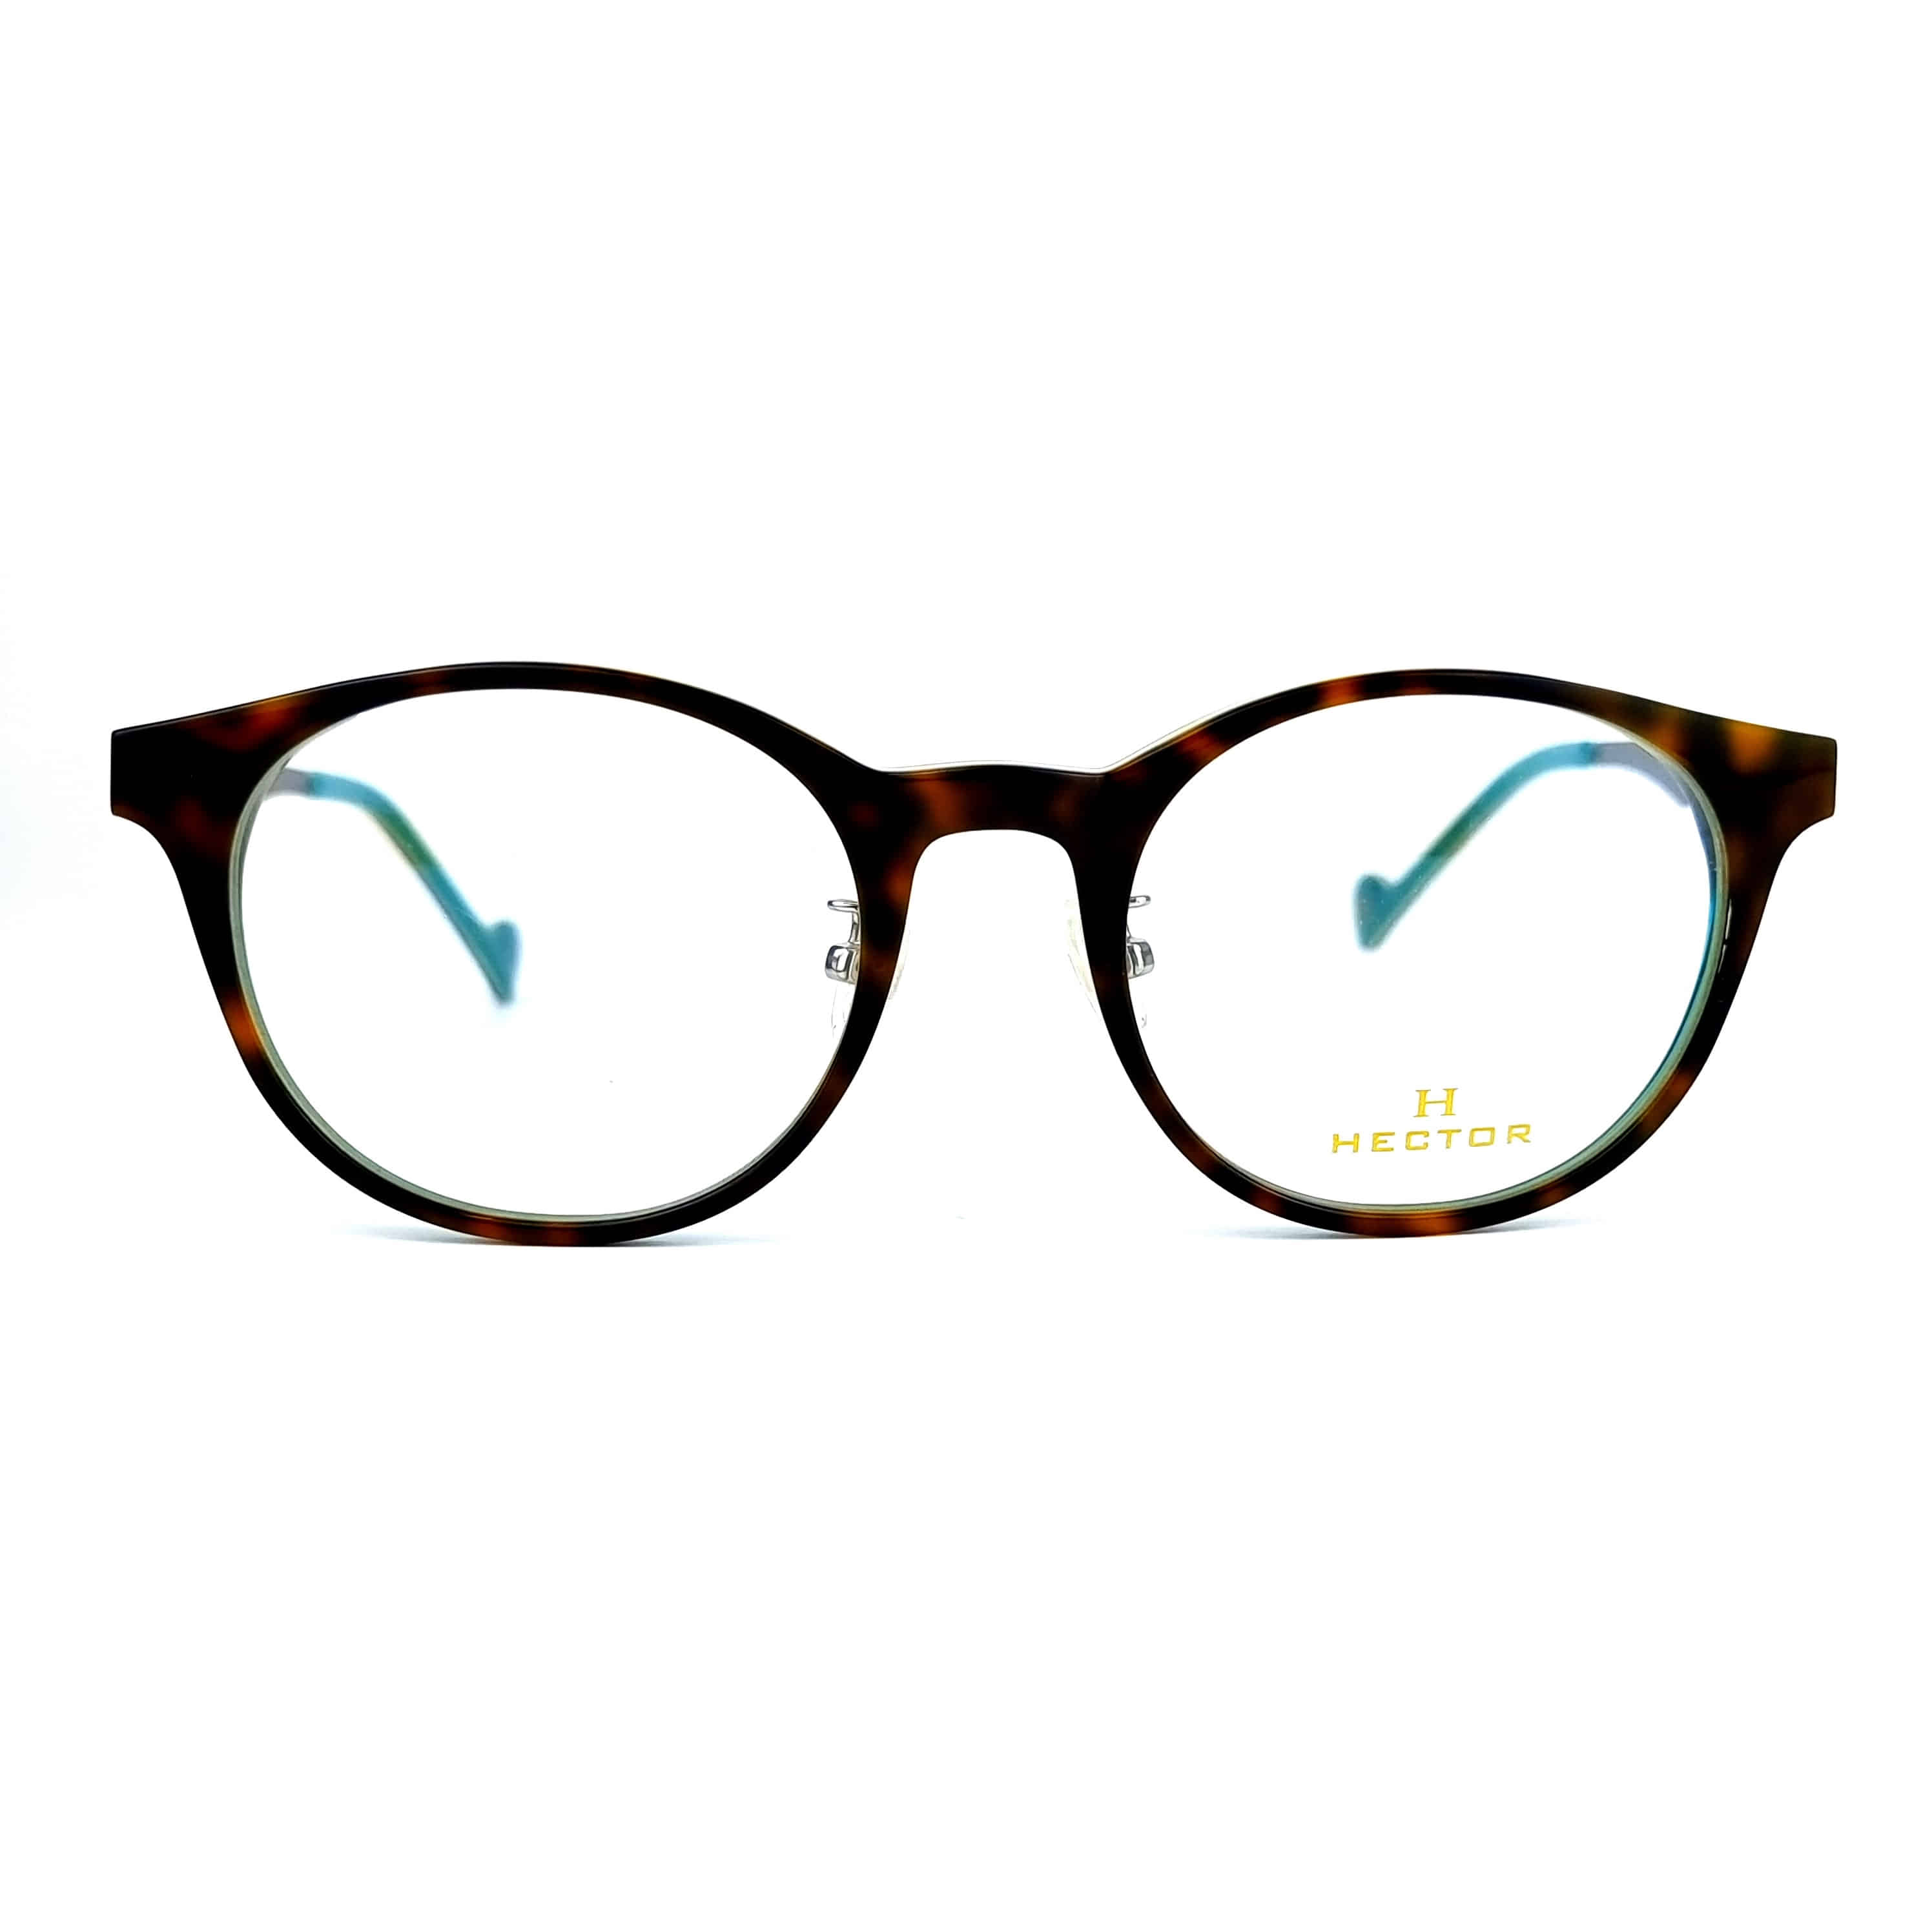 블루 호피 무늬 고급진 색상 헥토르 안경 HTR 8C-블루 명품안경